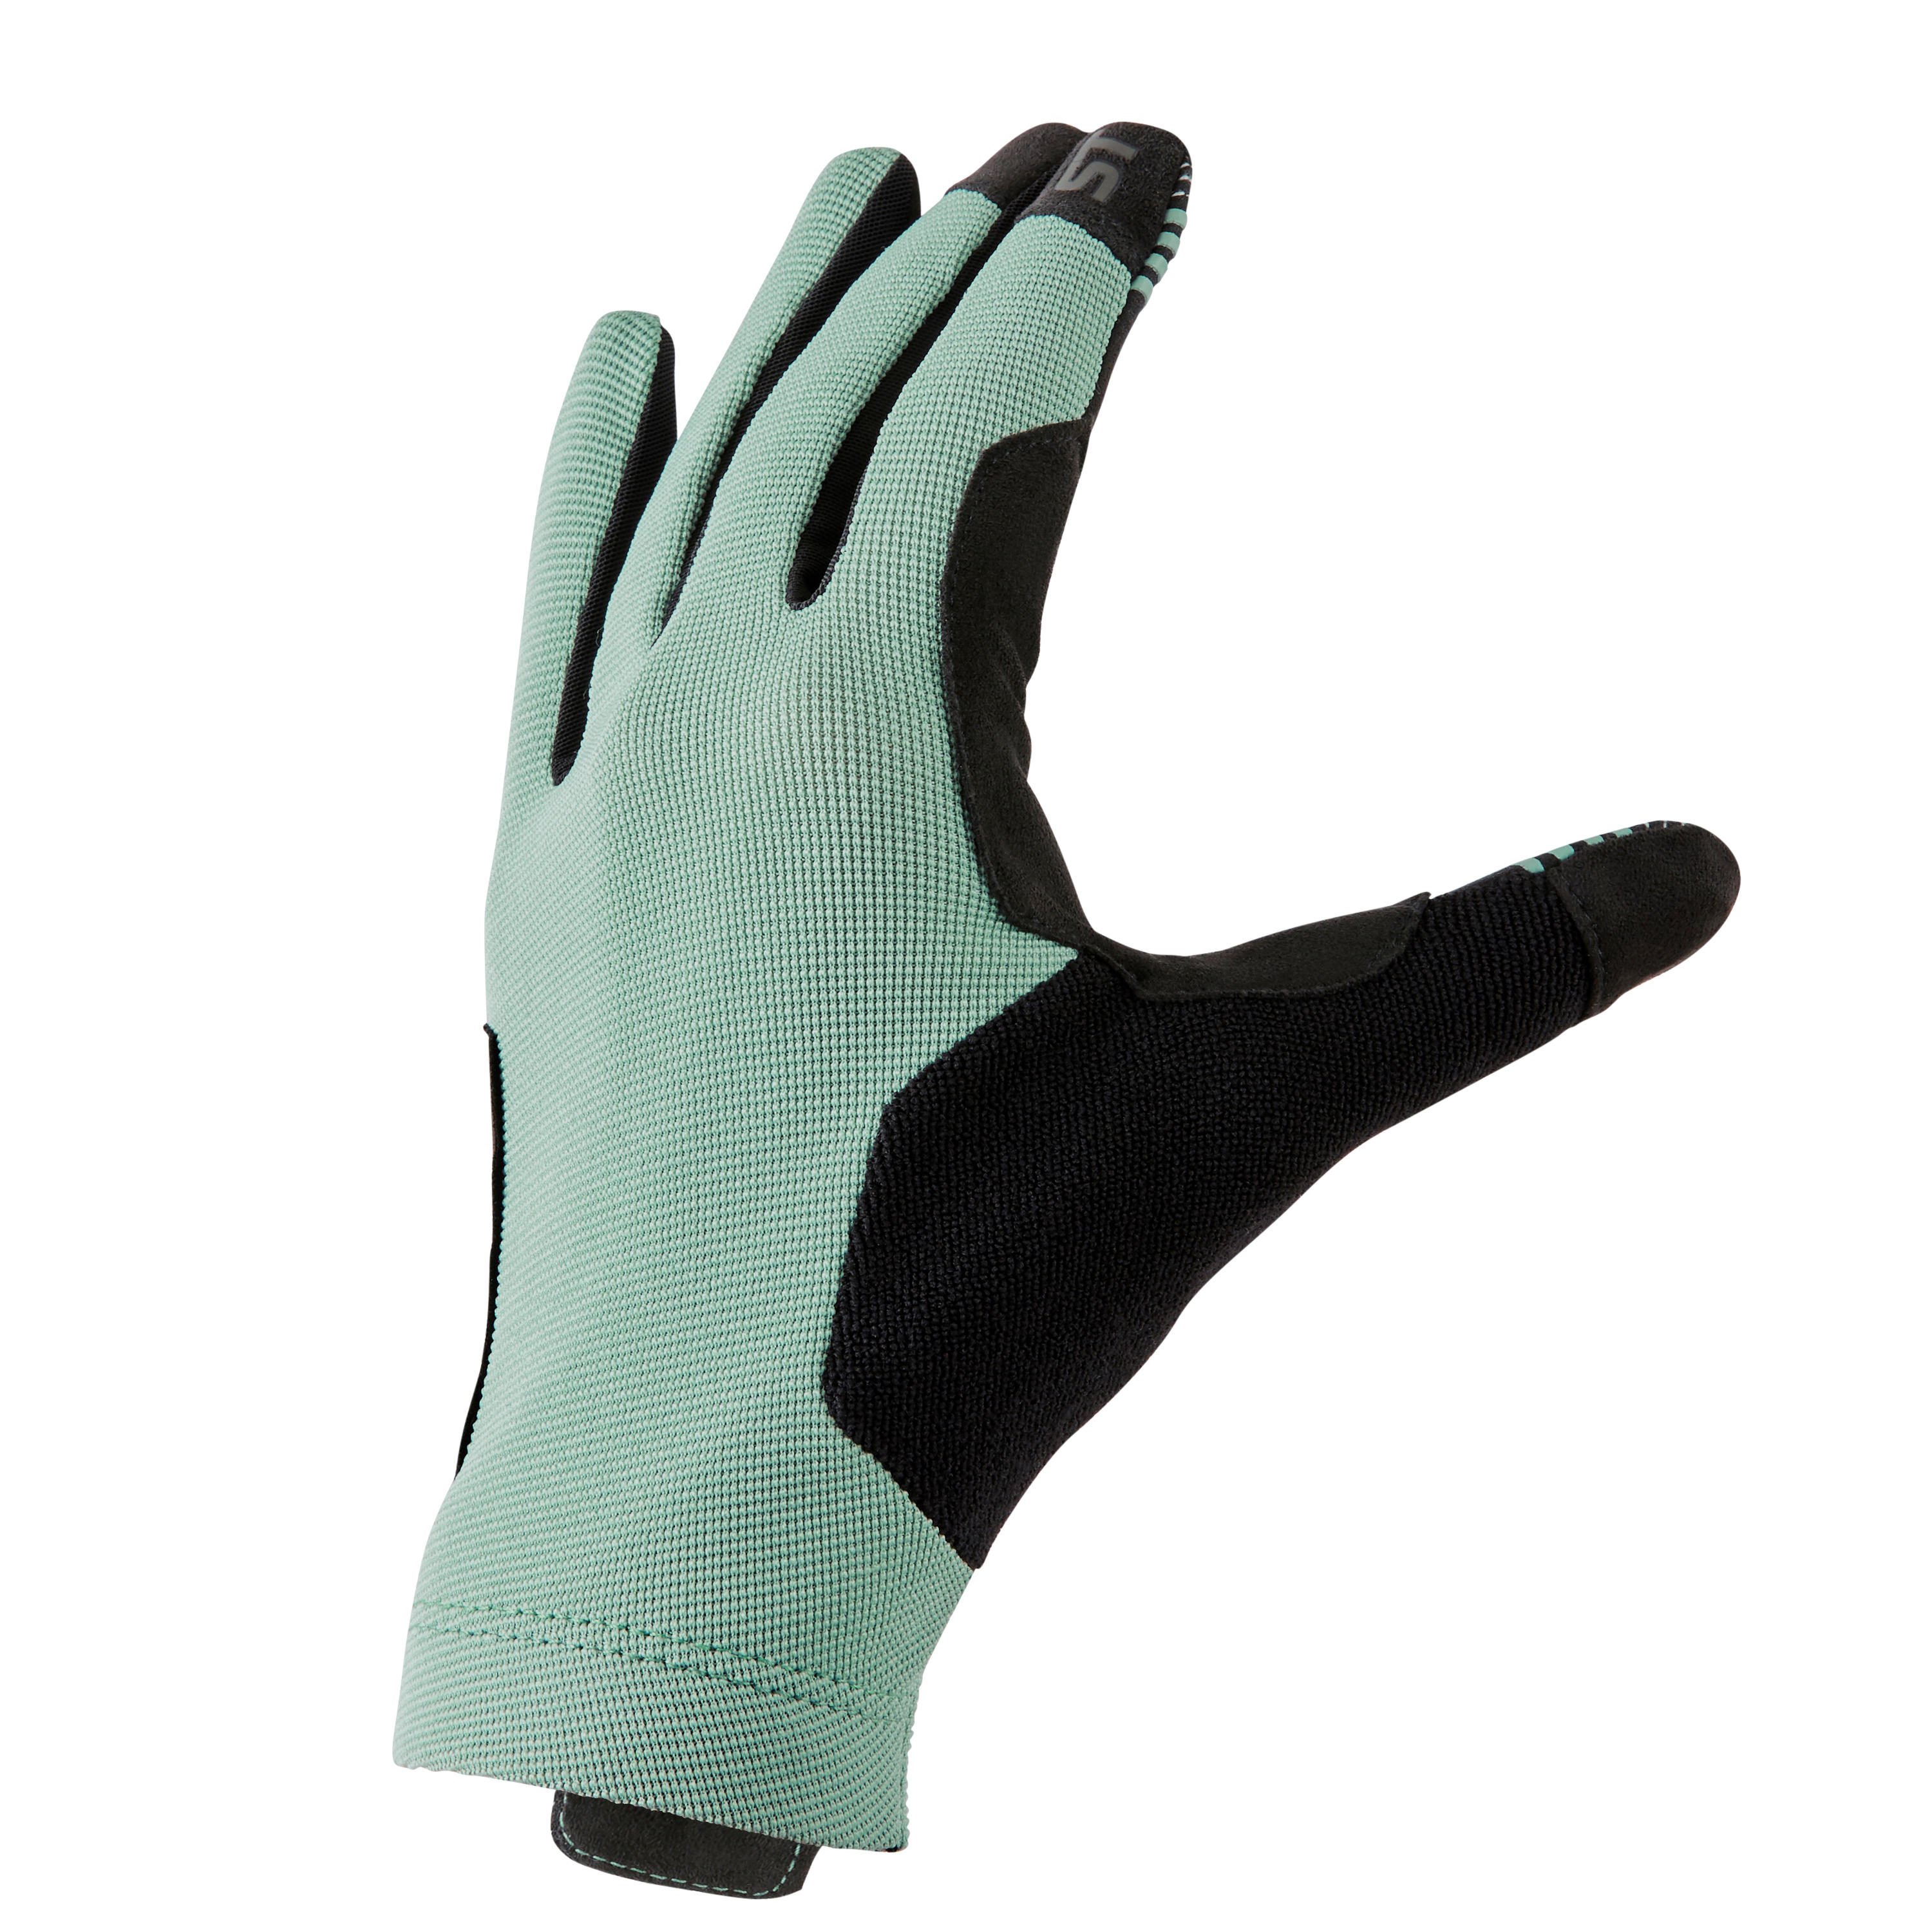 ROCKRIDER ST 100 Mountain Biking Gloves - Green